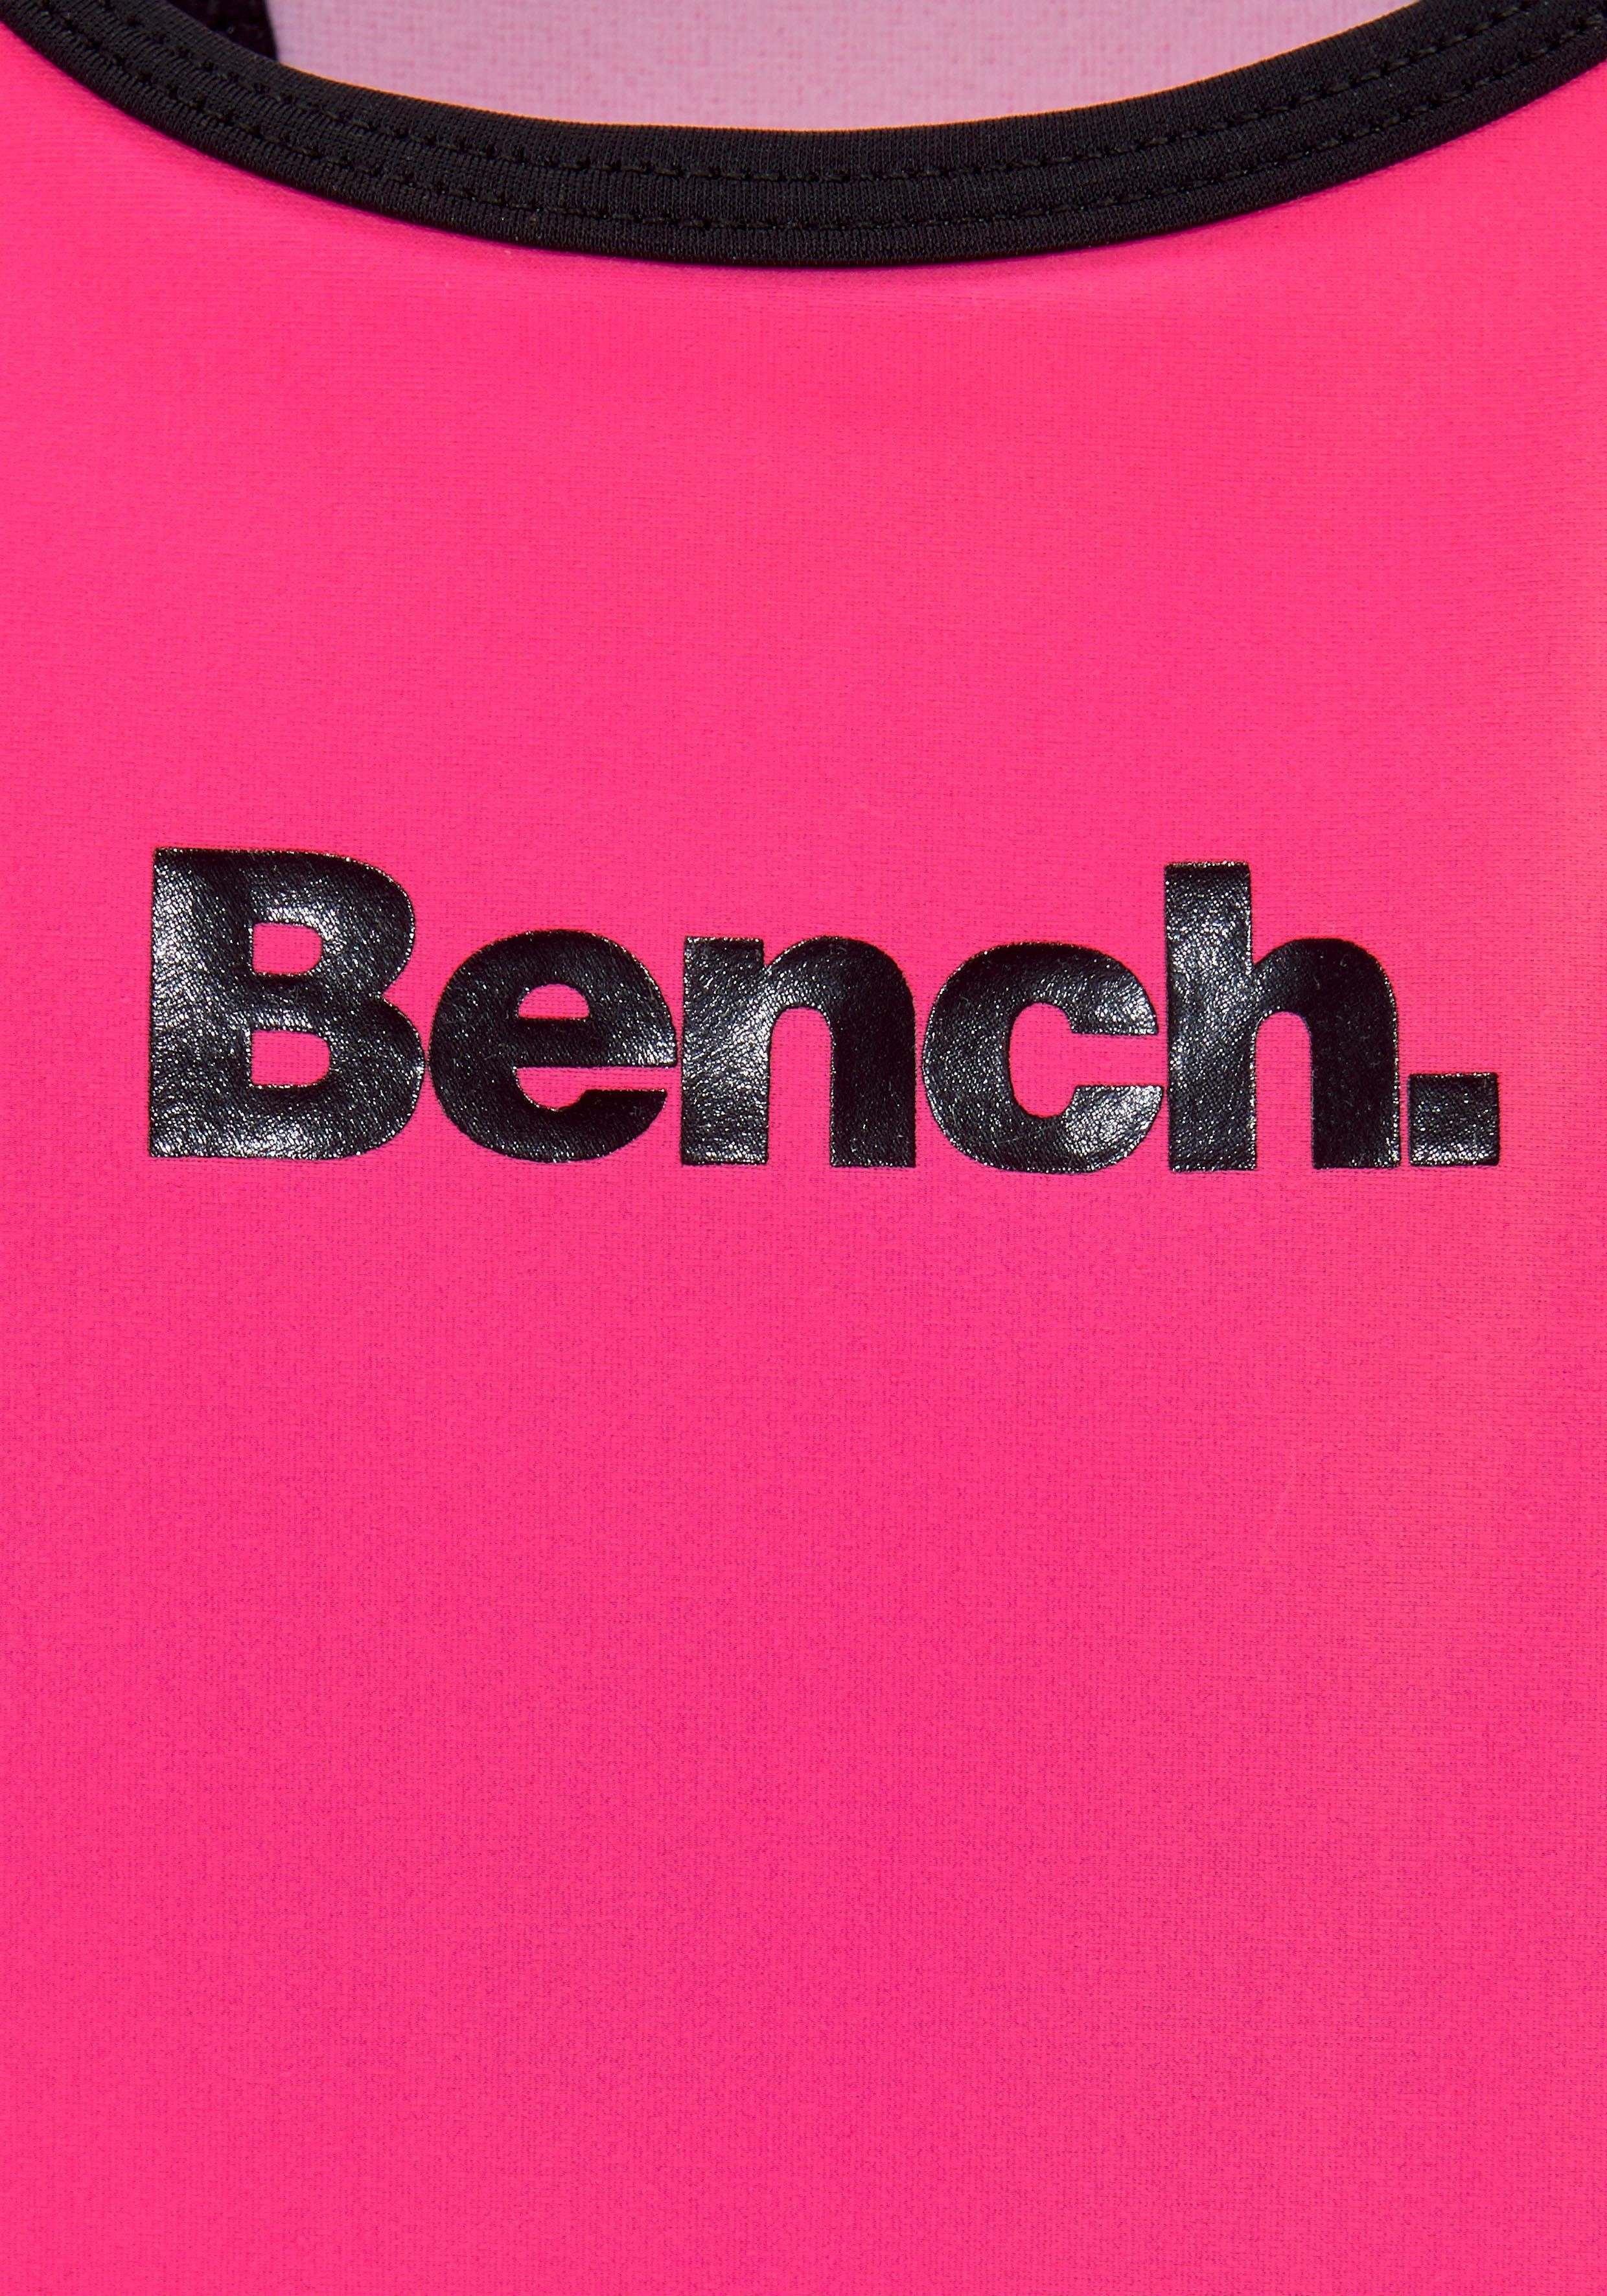 mit Logoprint Bench. pink-schwarz Badeanzug